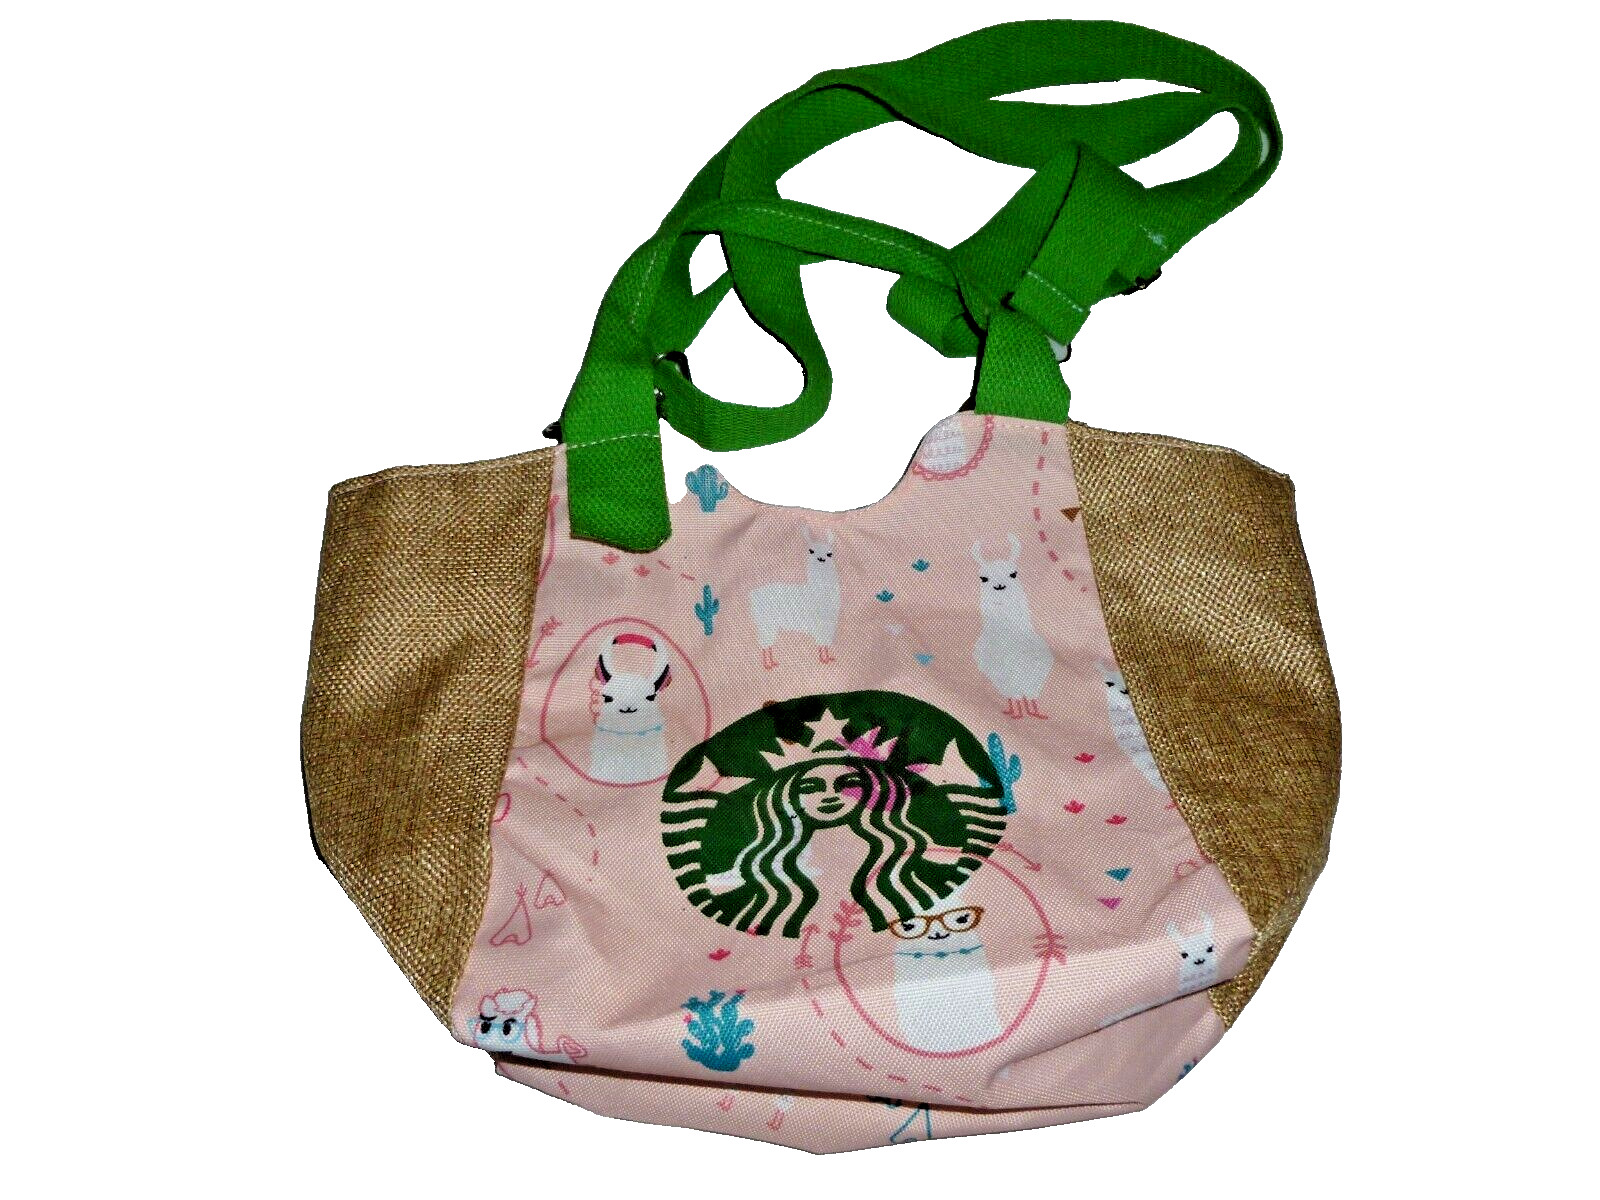 Starbucks Handbag Shoulder Bag Small Canvas Lightweight Handbag Tote Shopper